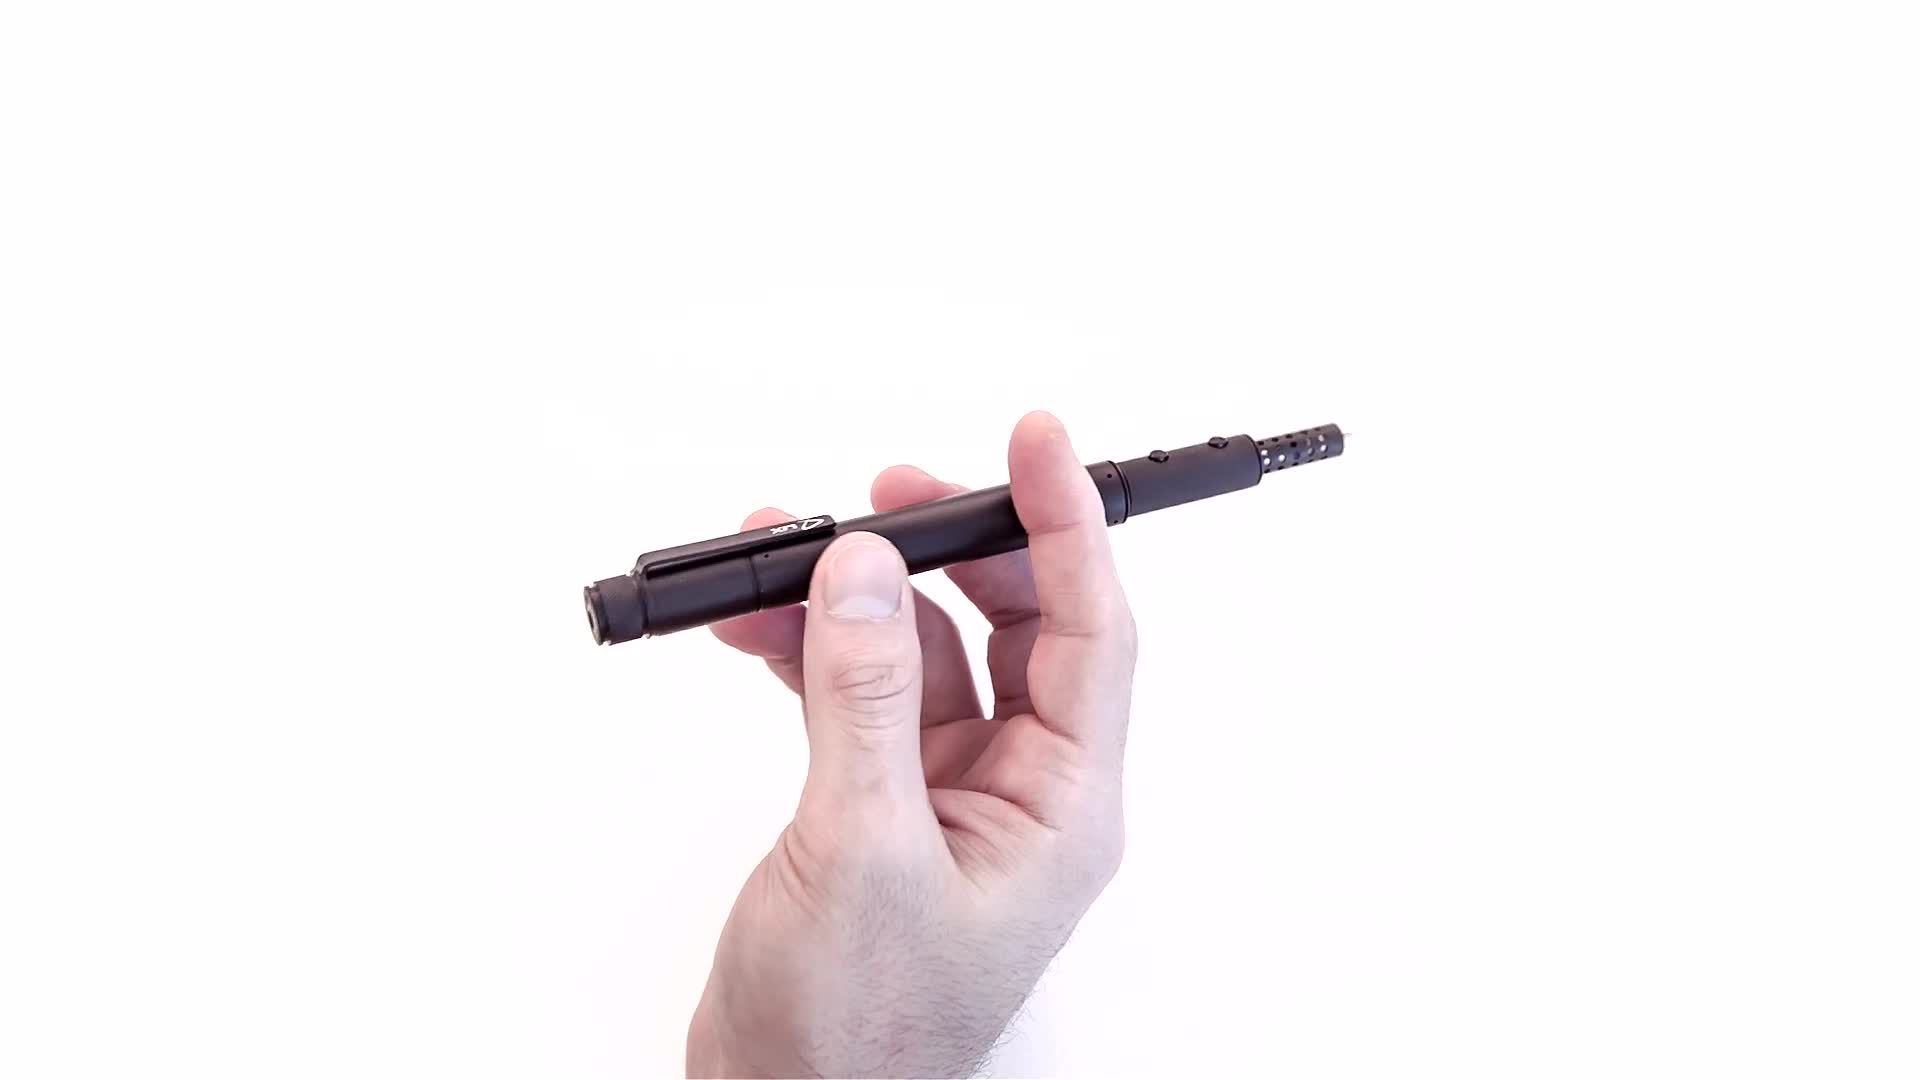 Lix The Smallest Circular 3D Printing Pen